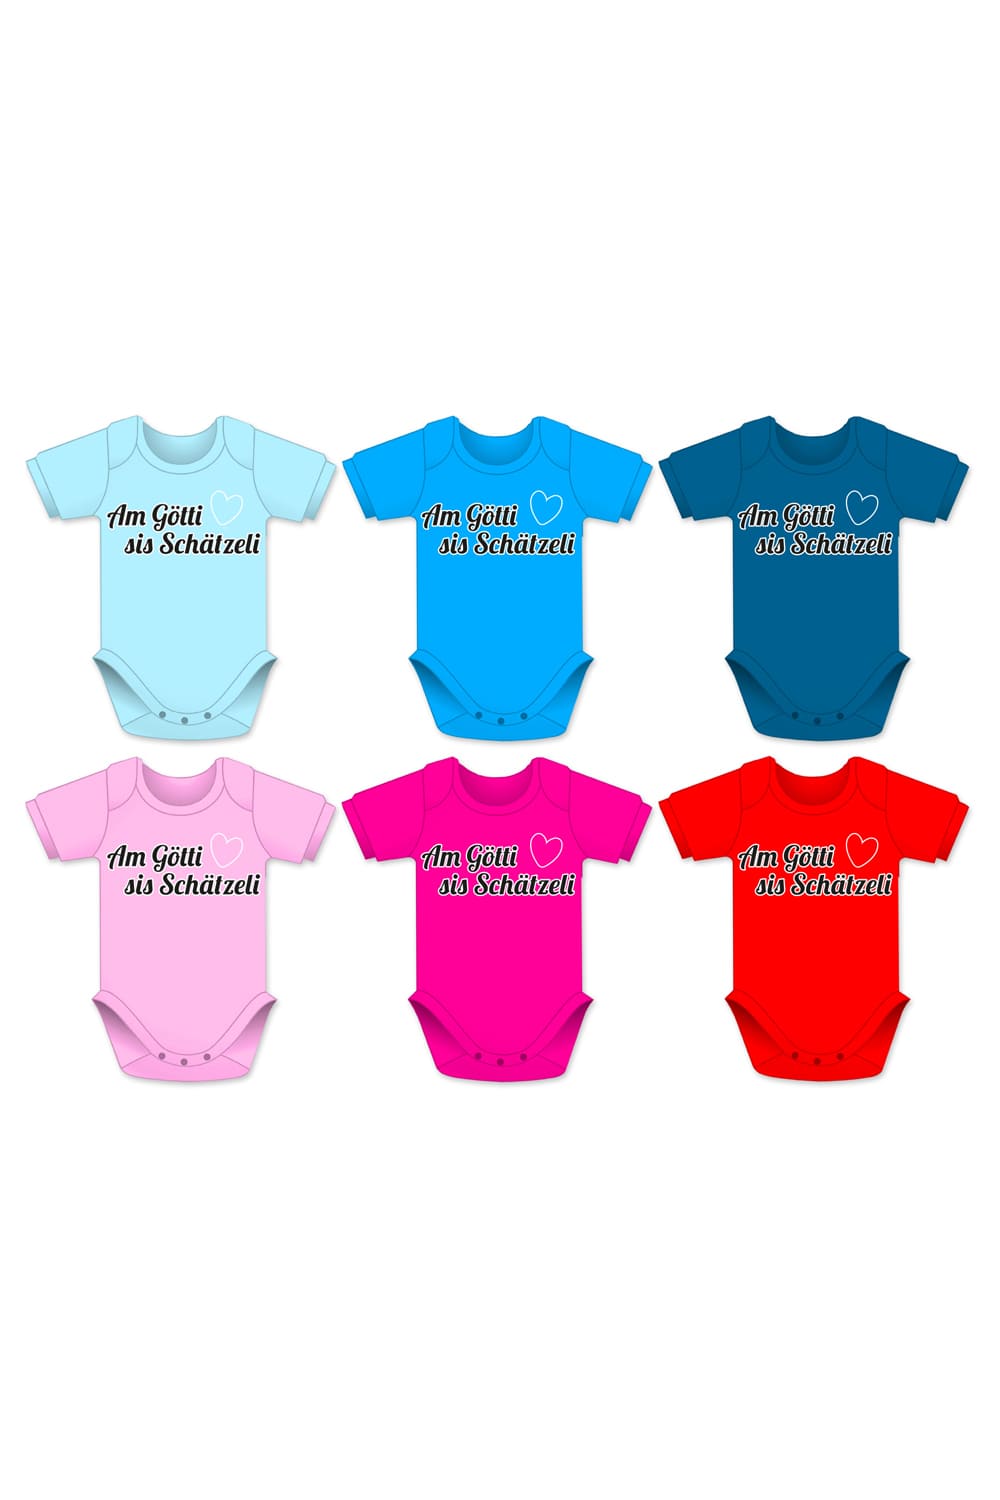 Babybodies in diversen Farben und Groessen mit der Aufschrift Schaetzeli und einem Herzbild